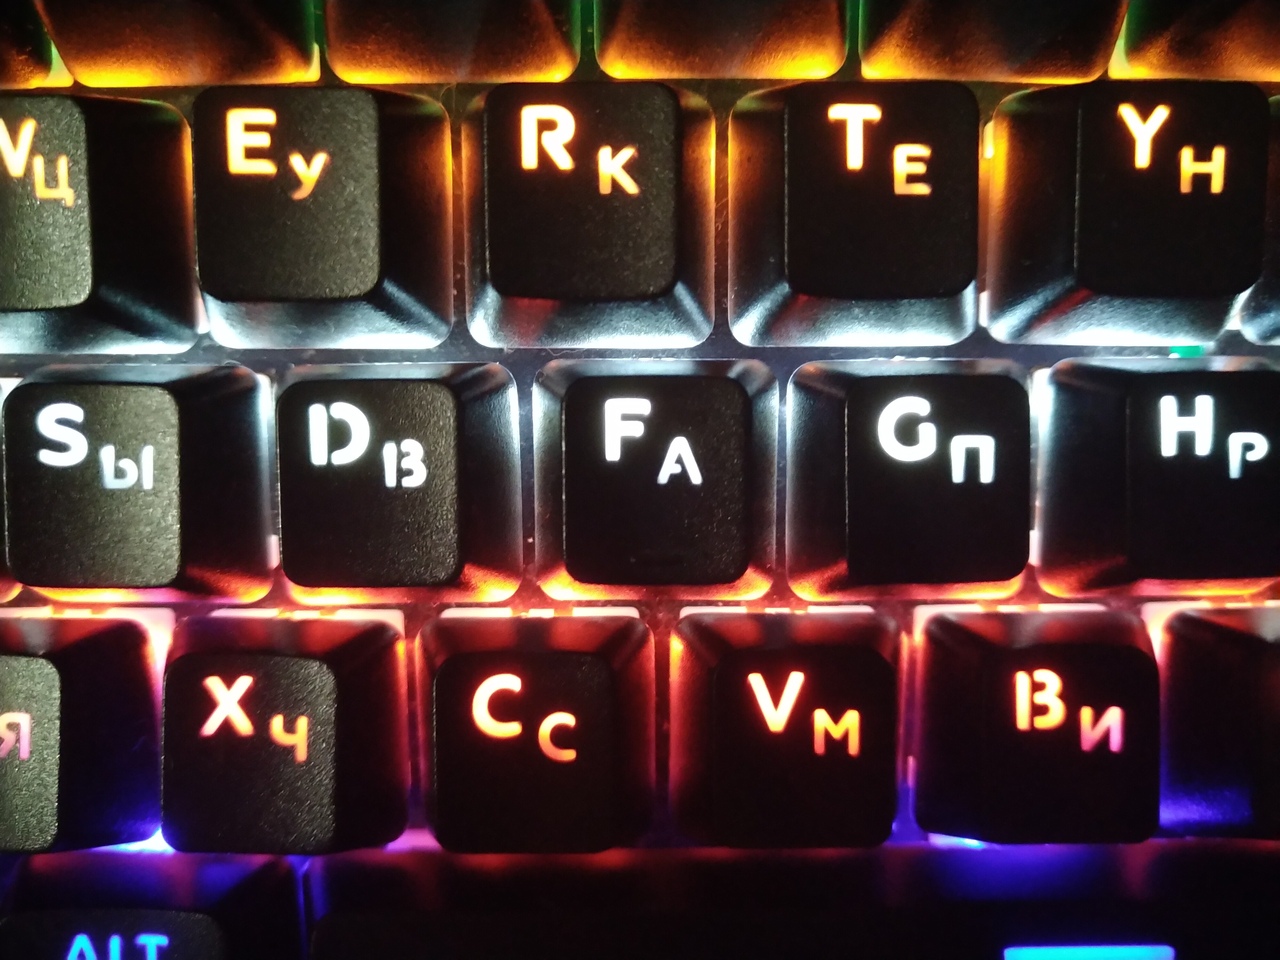 Клавиатура blazing pro подсветка. Аватарки на клавиатуру. Блейзинг про. Как менять подсветку на клавиатуре Blazing Pro RGB.